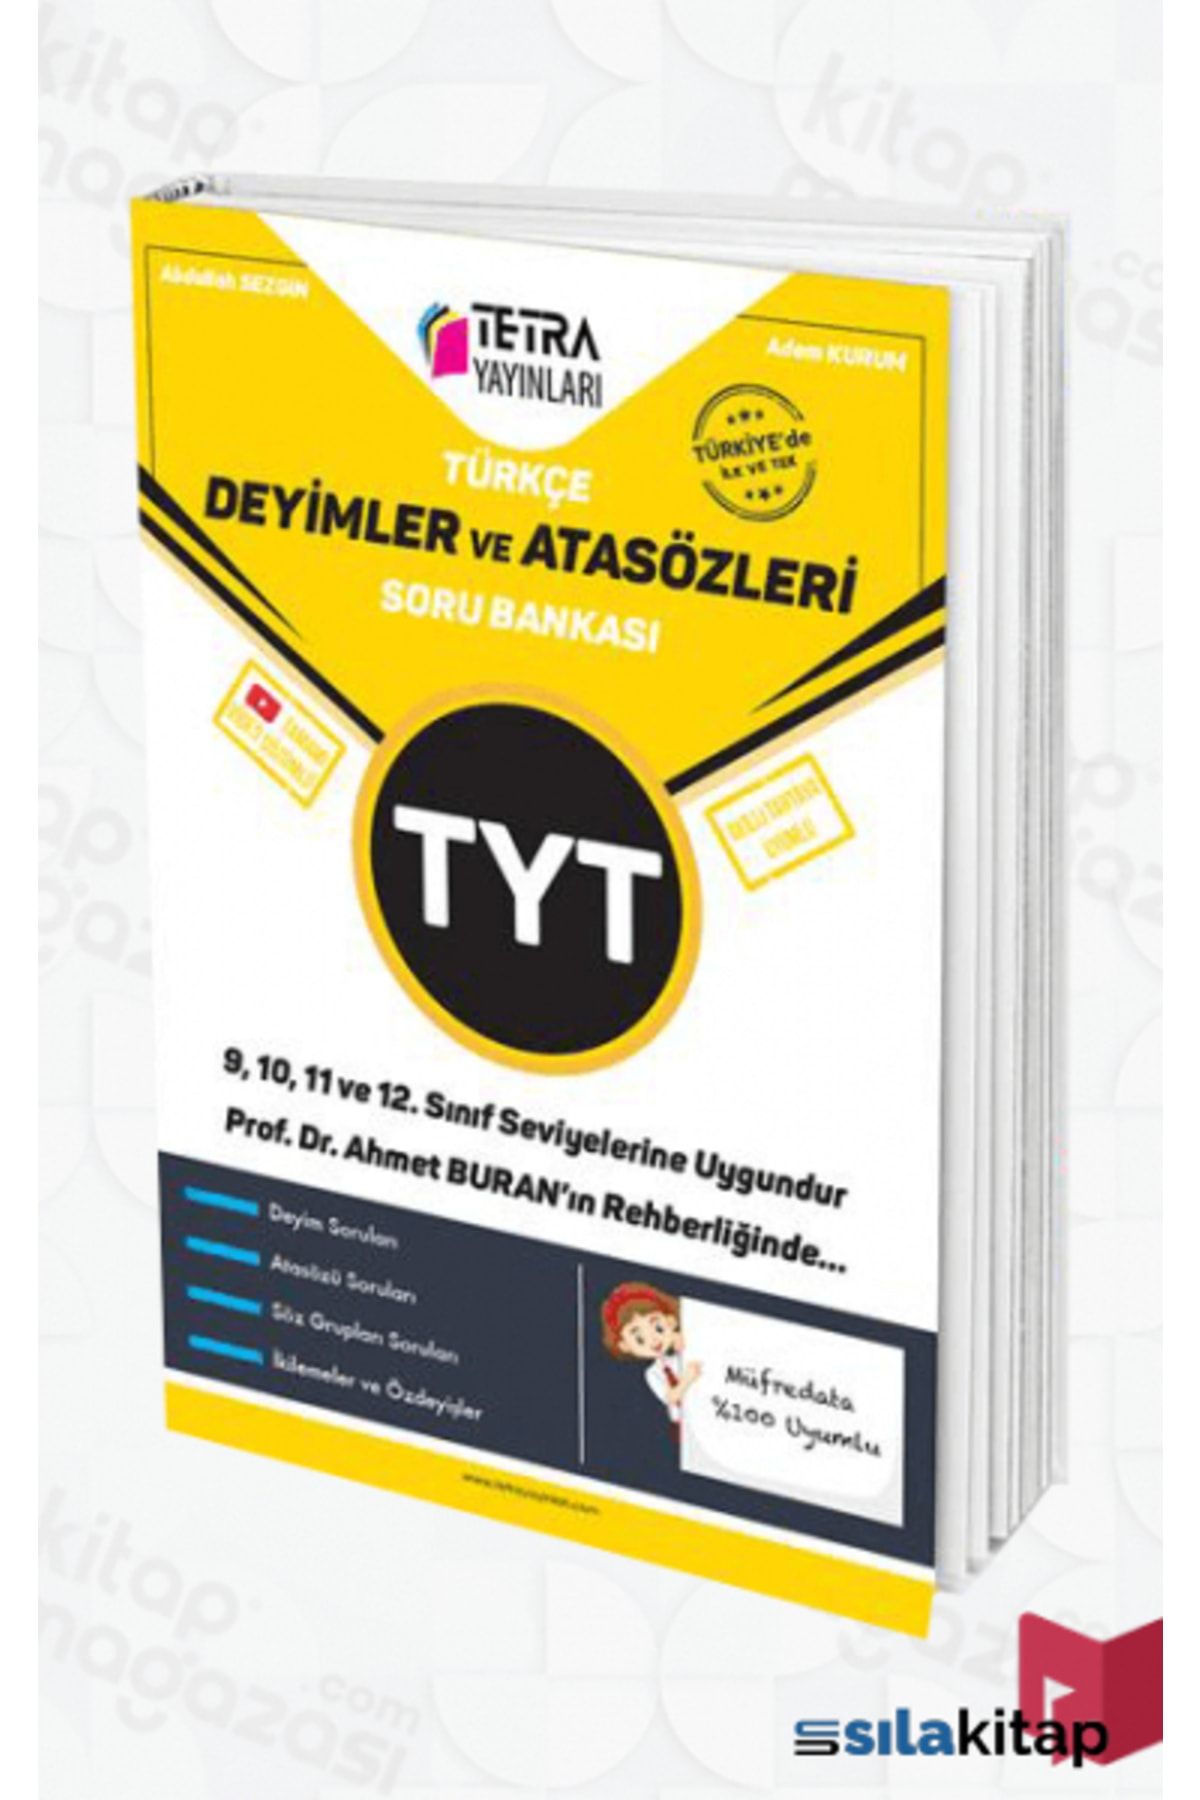 TETRA Yayınları Tyt Deyimler Ve Atasözleri Soru Bankası